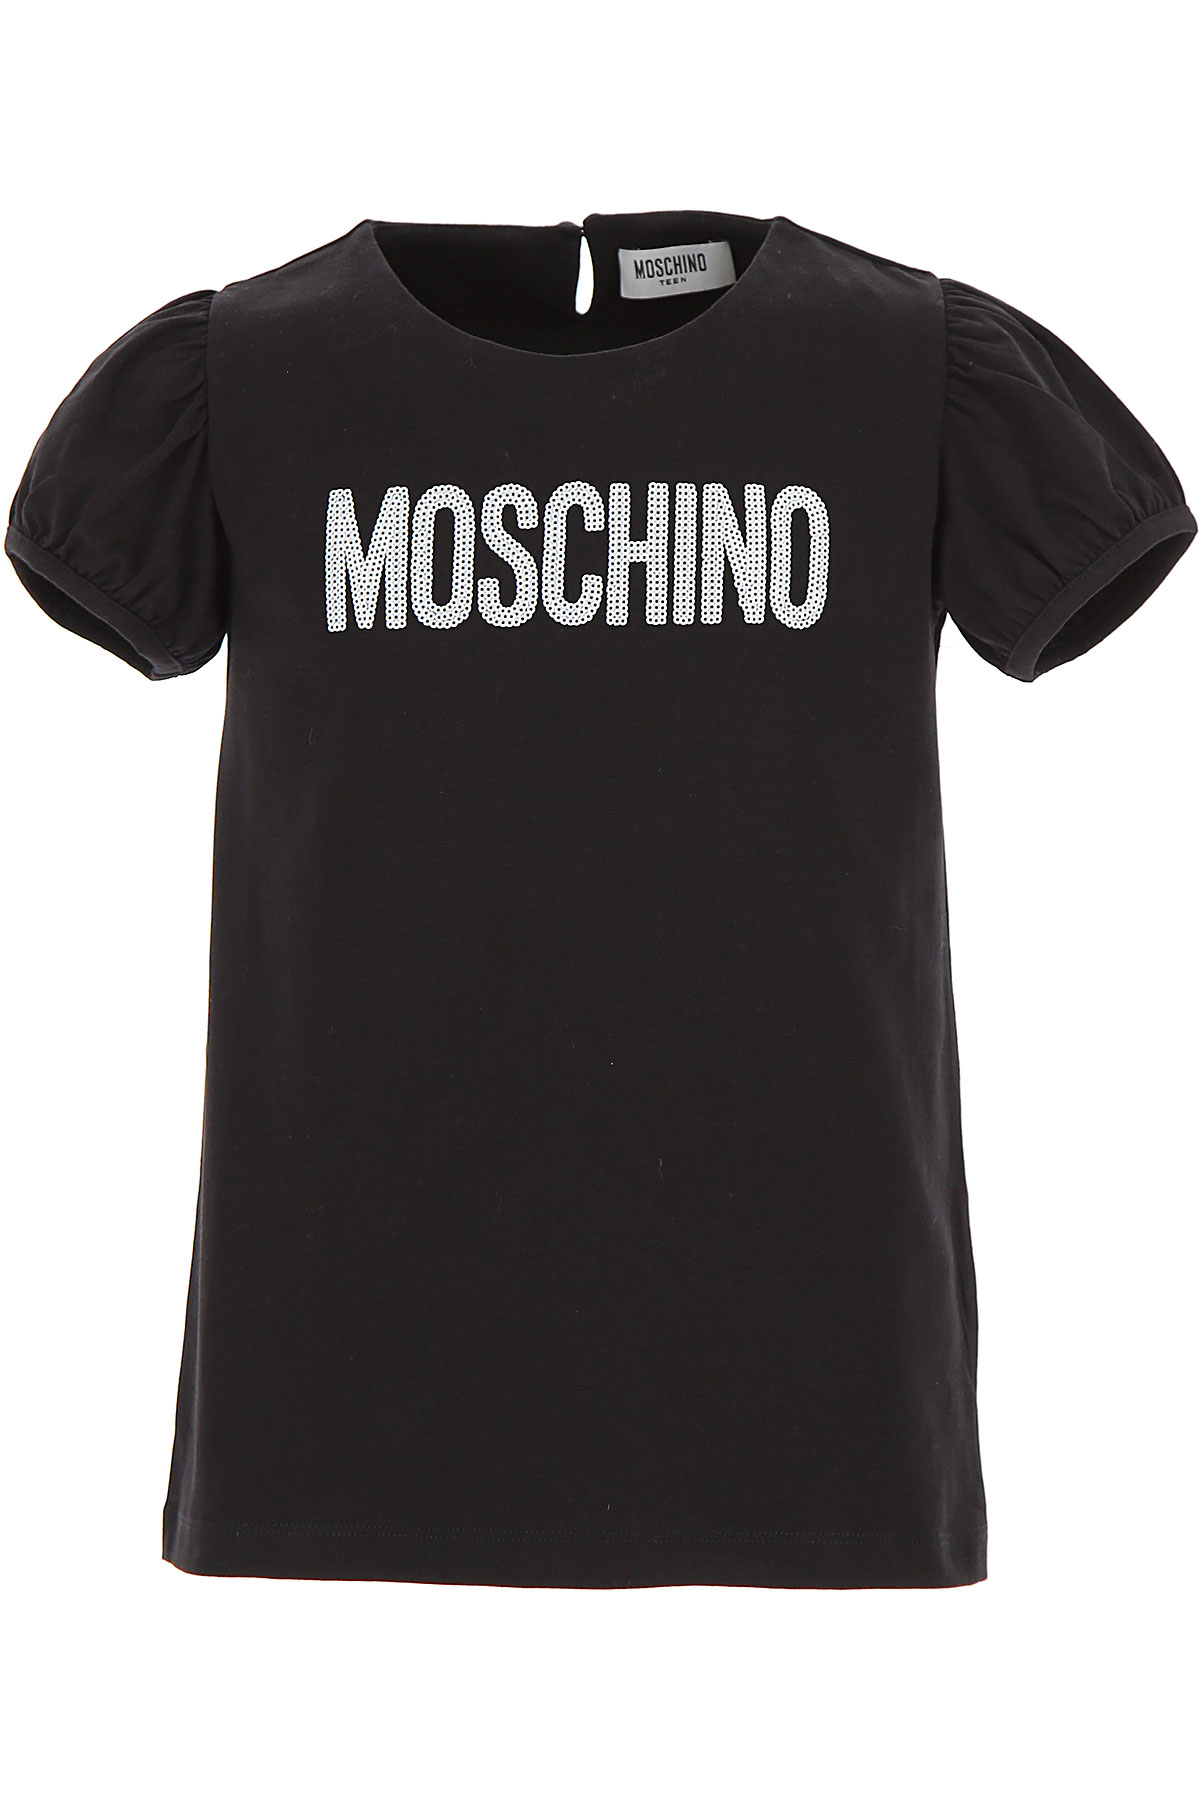 Moschino Kinder T-Shirt für Mädchen Günstig im Outlet Sale, Schwarz, Baumwolle, 2017, 6Y 8Y